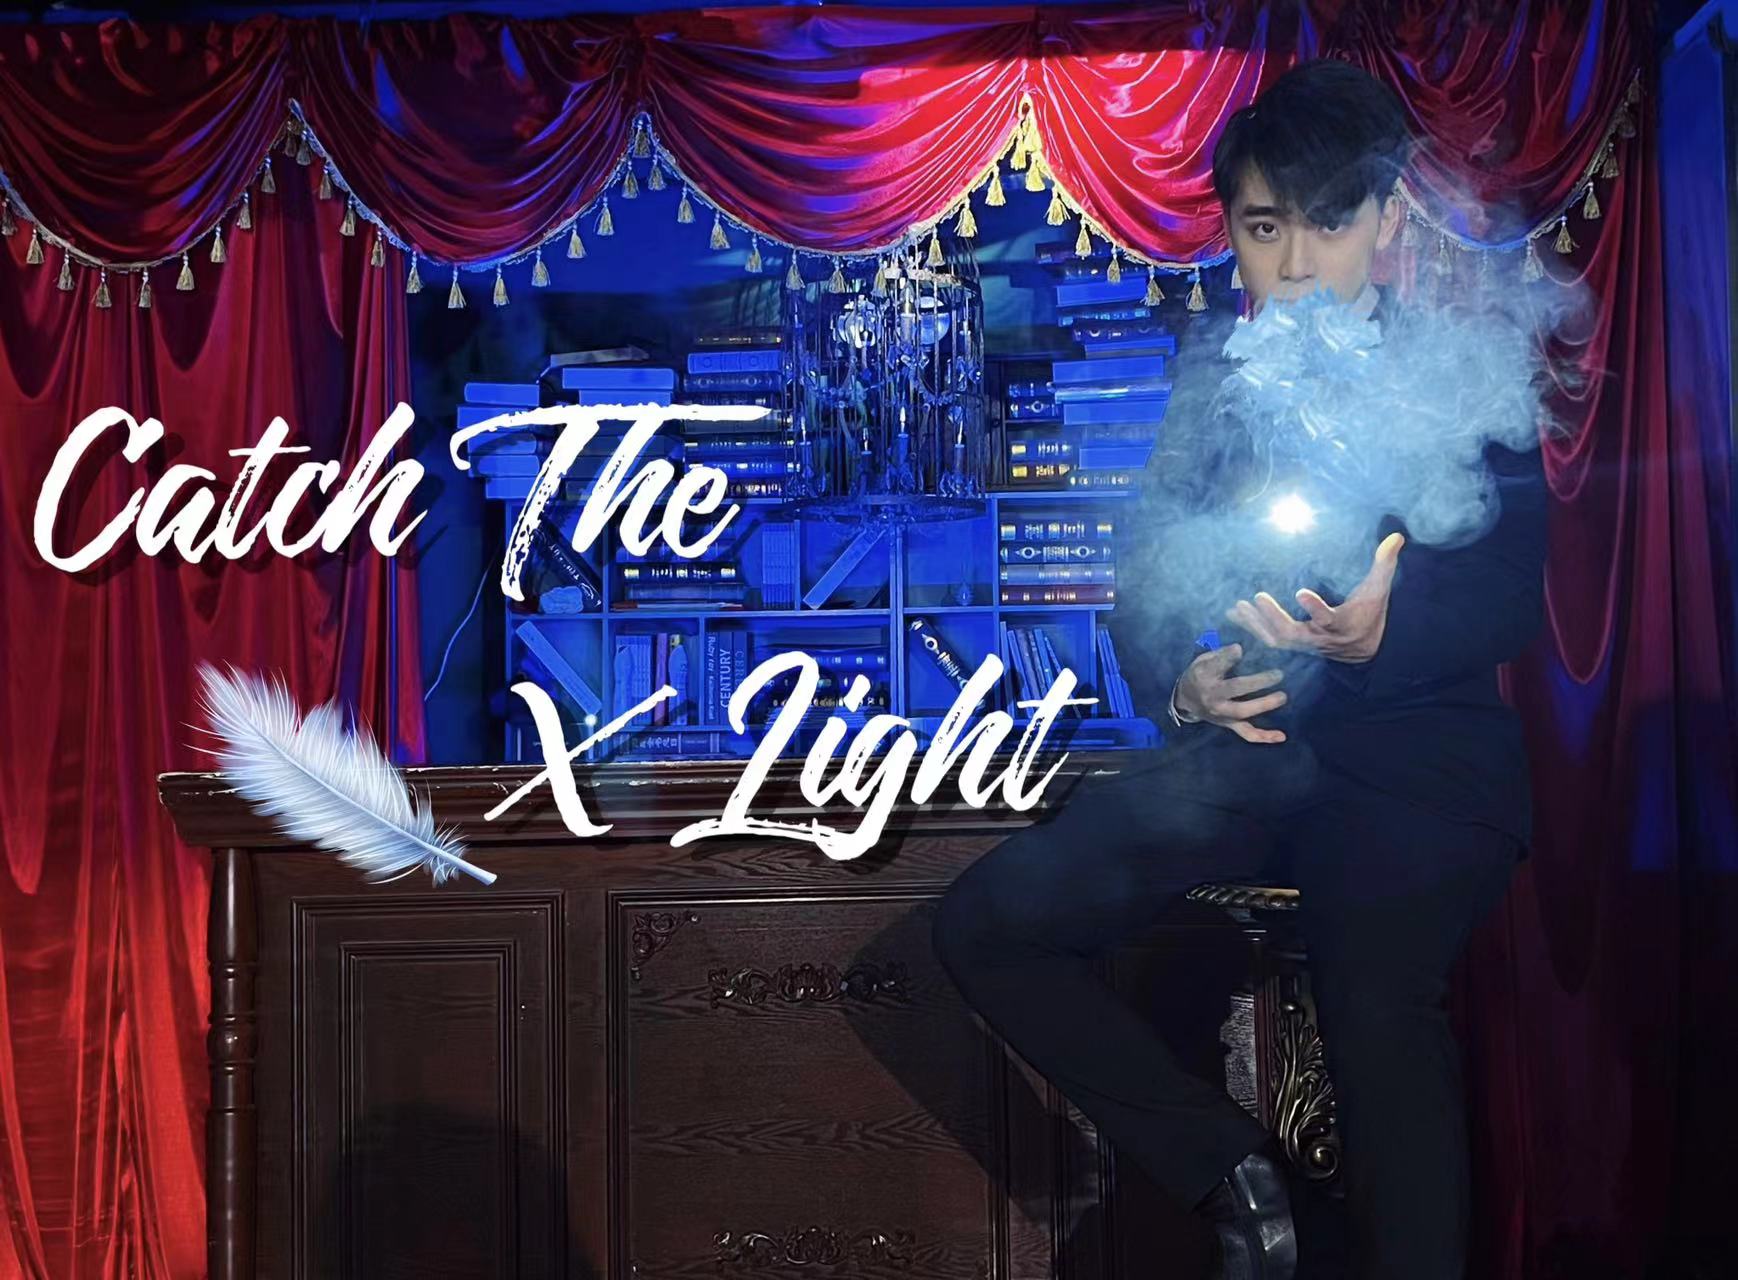 Catch The X Light By Kingsley Xu